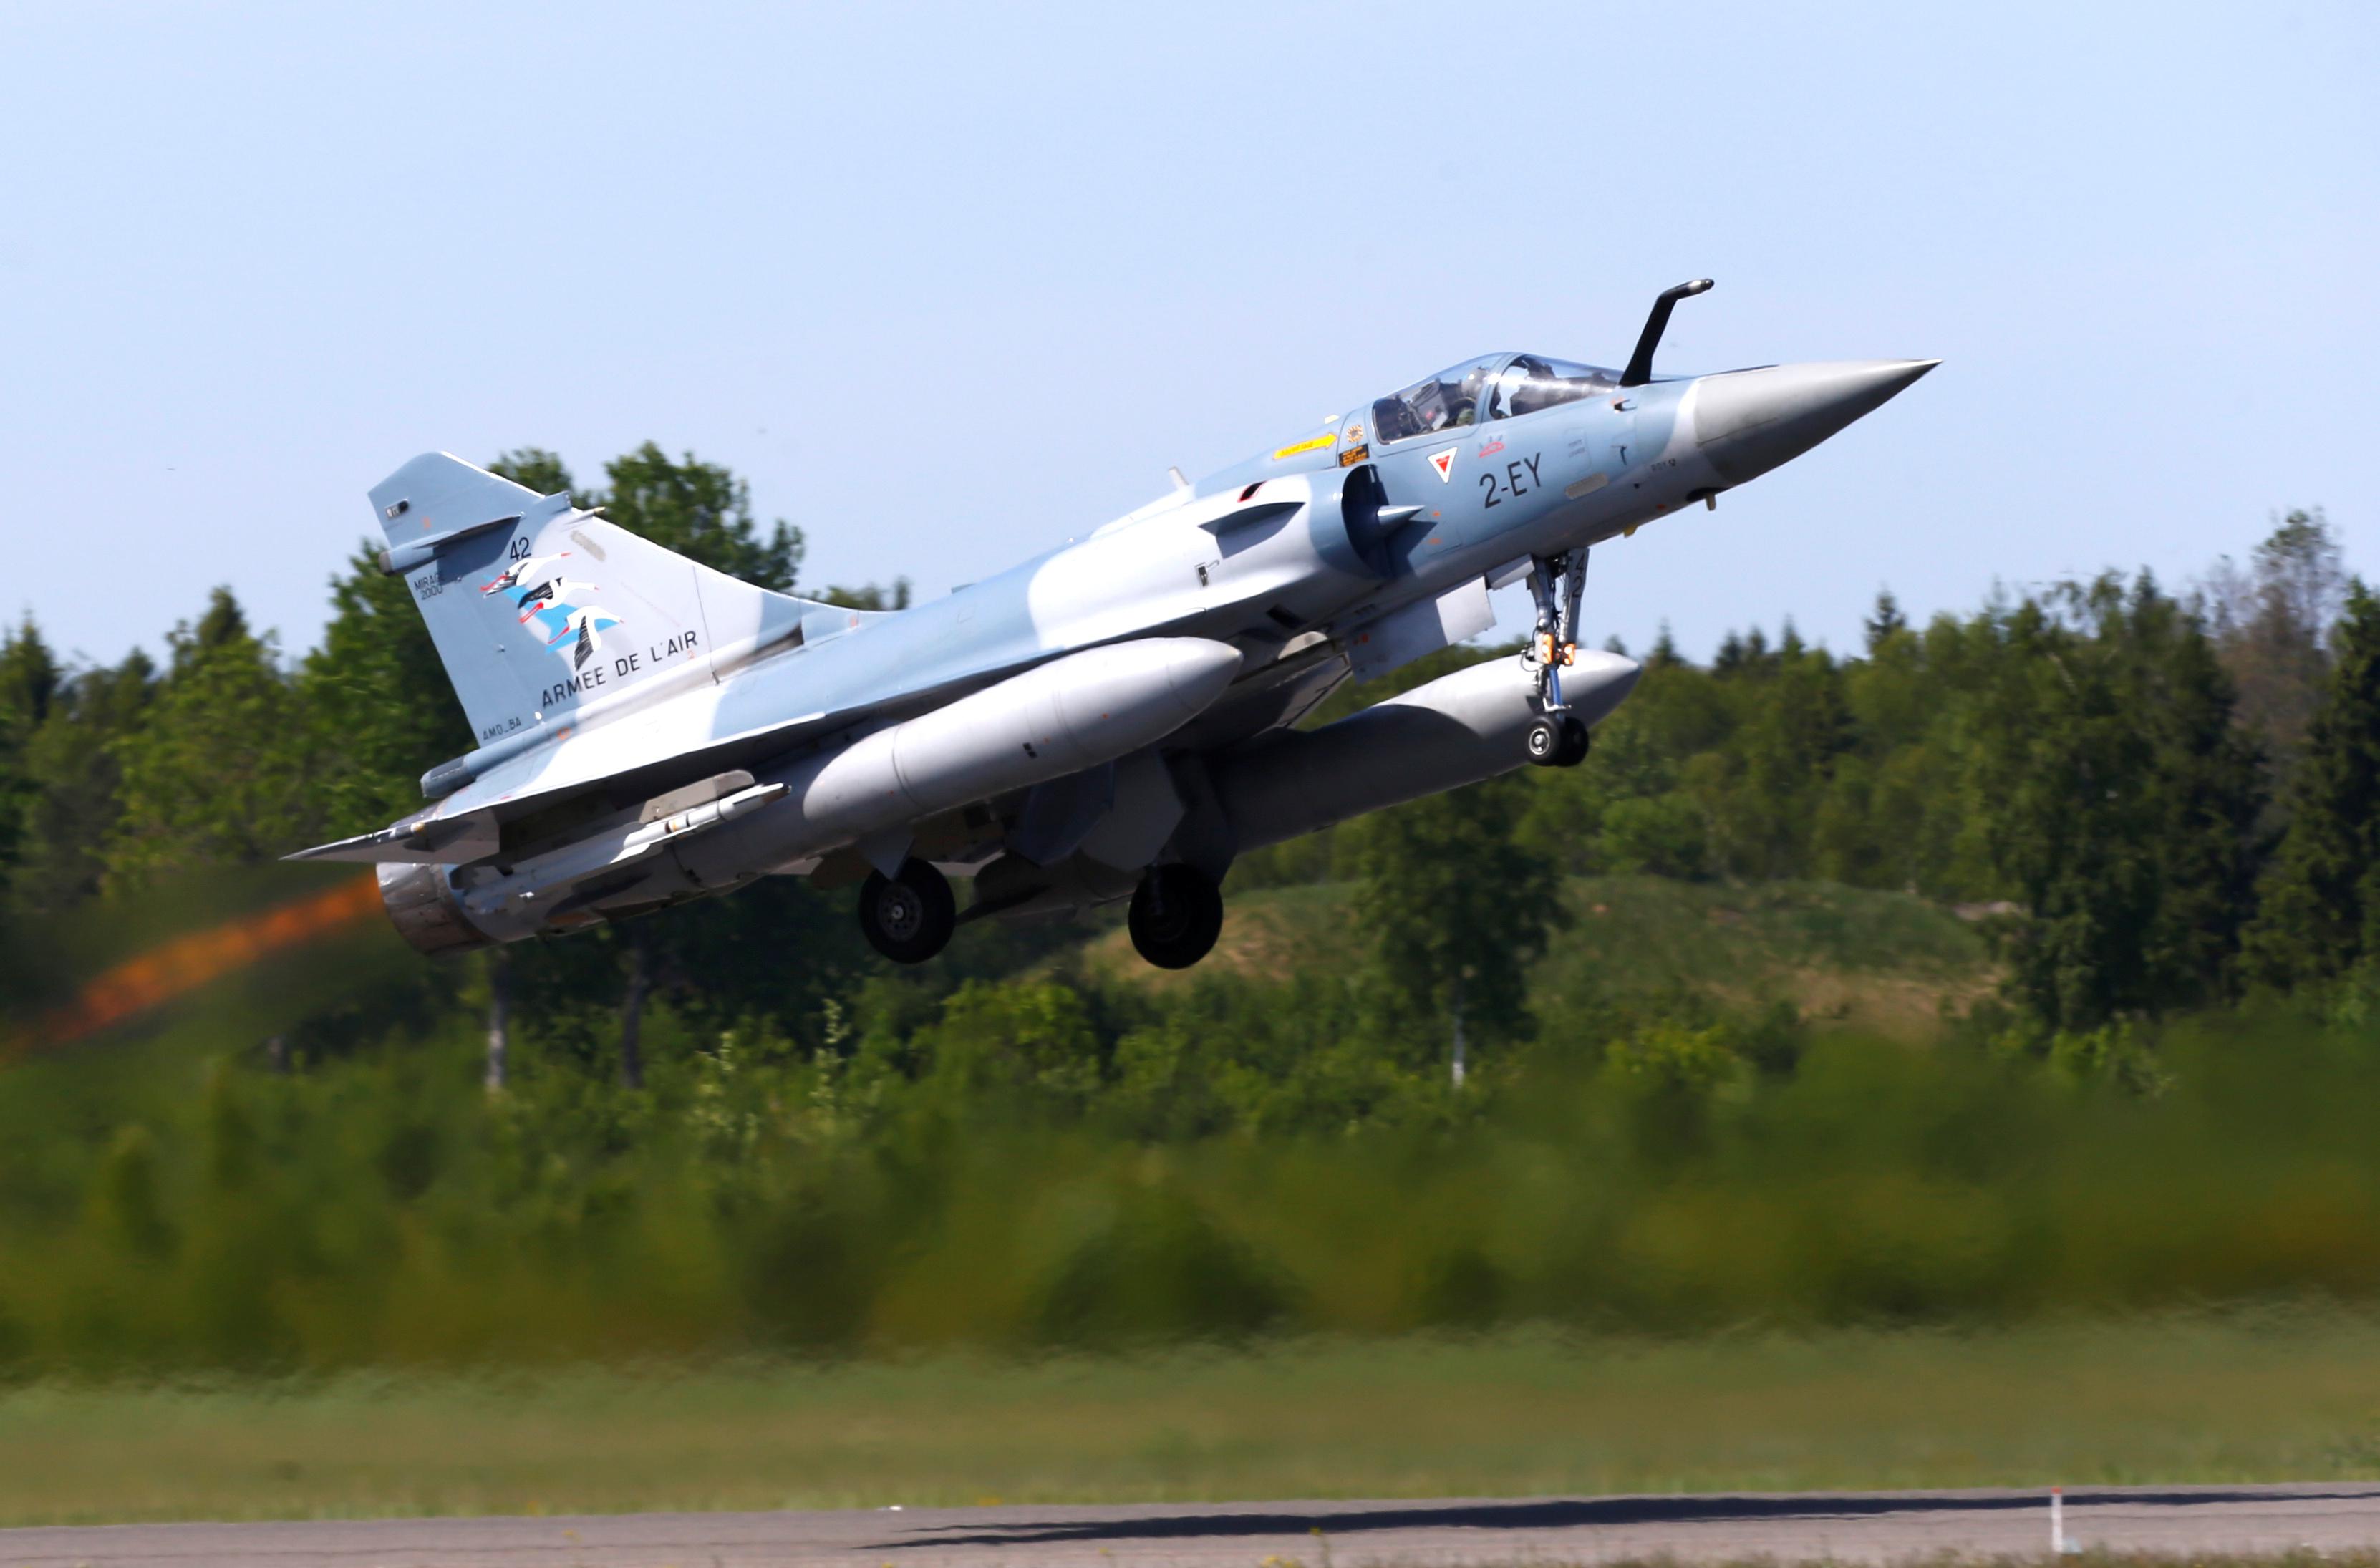 Un chasseur Mirage 2000-5 de l'armée de l'air française décolle lors d'une mission de police de l'air de l'OTAN dans la Baltique, sur la base aérienne militaire d'Amari, en Estonie, le 25 mai 2018 (image d'illustration). [REUTERS - INTS KALNINS]